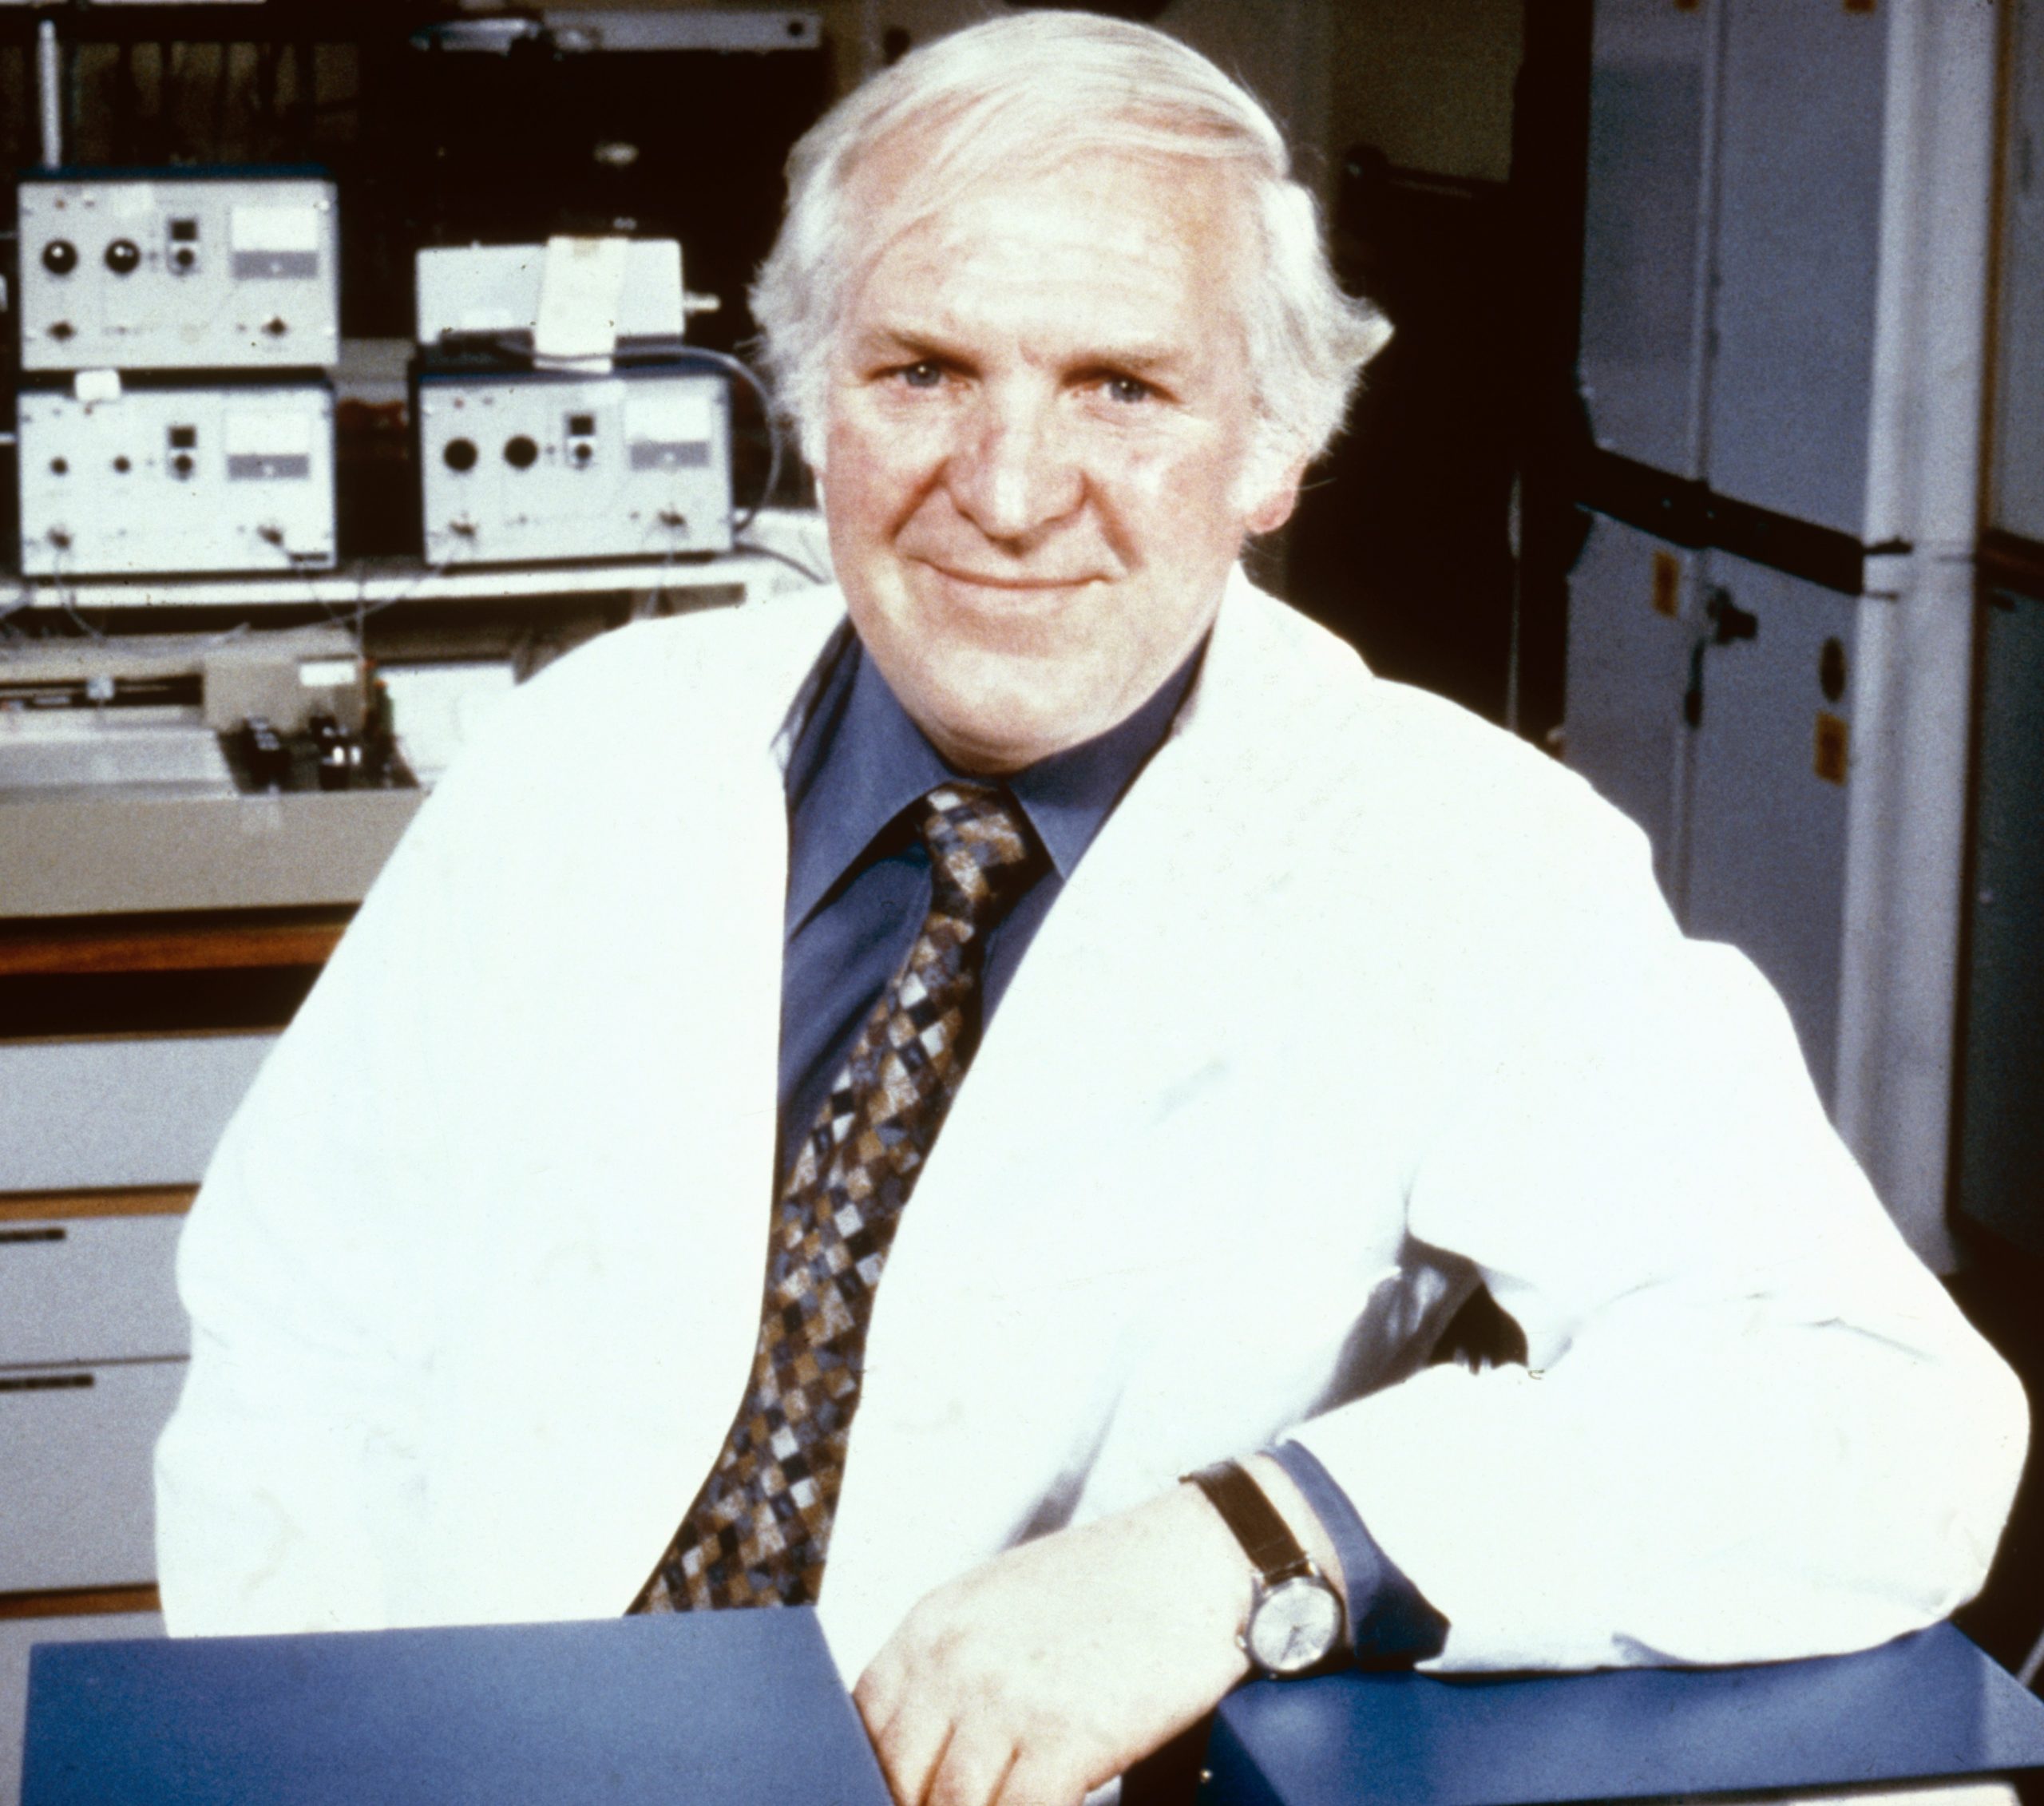 Foto do cientista Sir James Black posando e sorrindo. Ele é um homem branco de cabelos grisalhos e veste um jaleco branco.